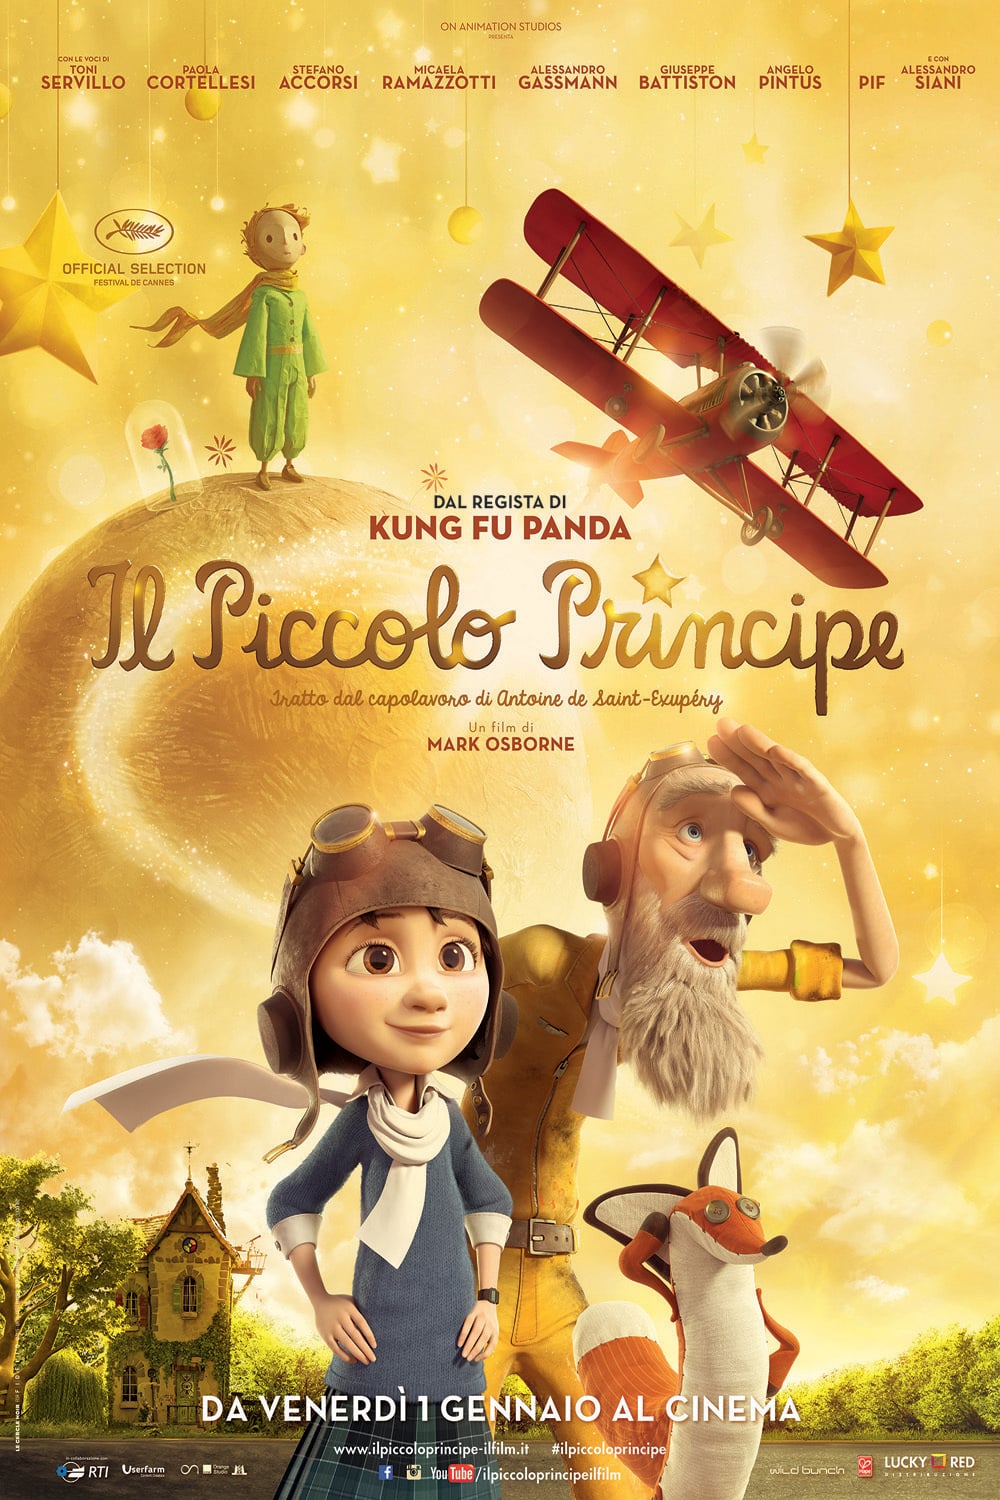 Poster for the movie "Il piccolo principe"